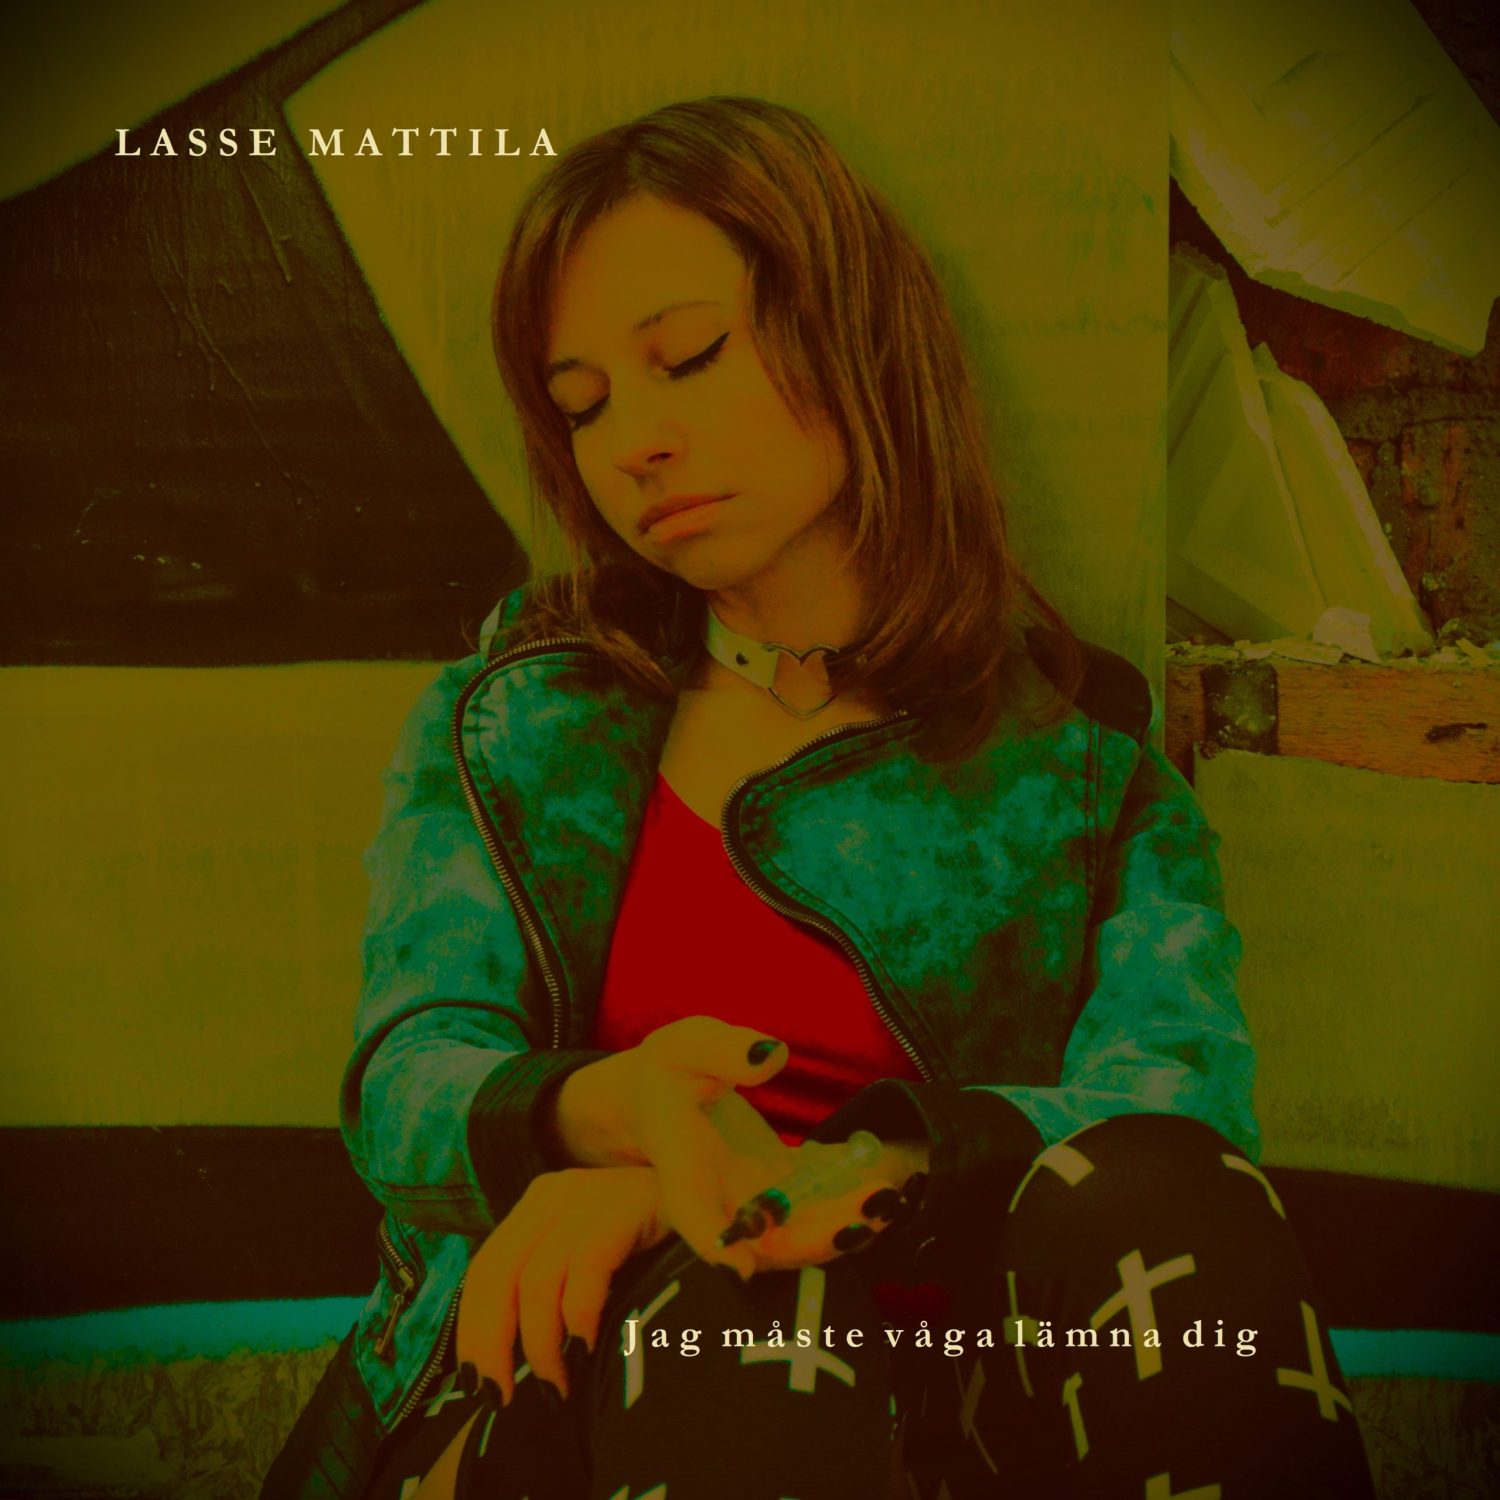 Bild på omslaget till Lasse Mattilas nya singel "Jag måste våga lämna dig"